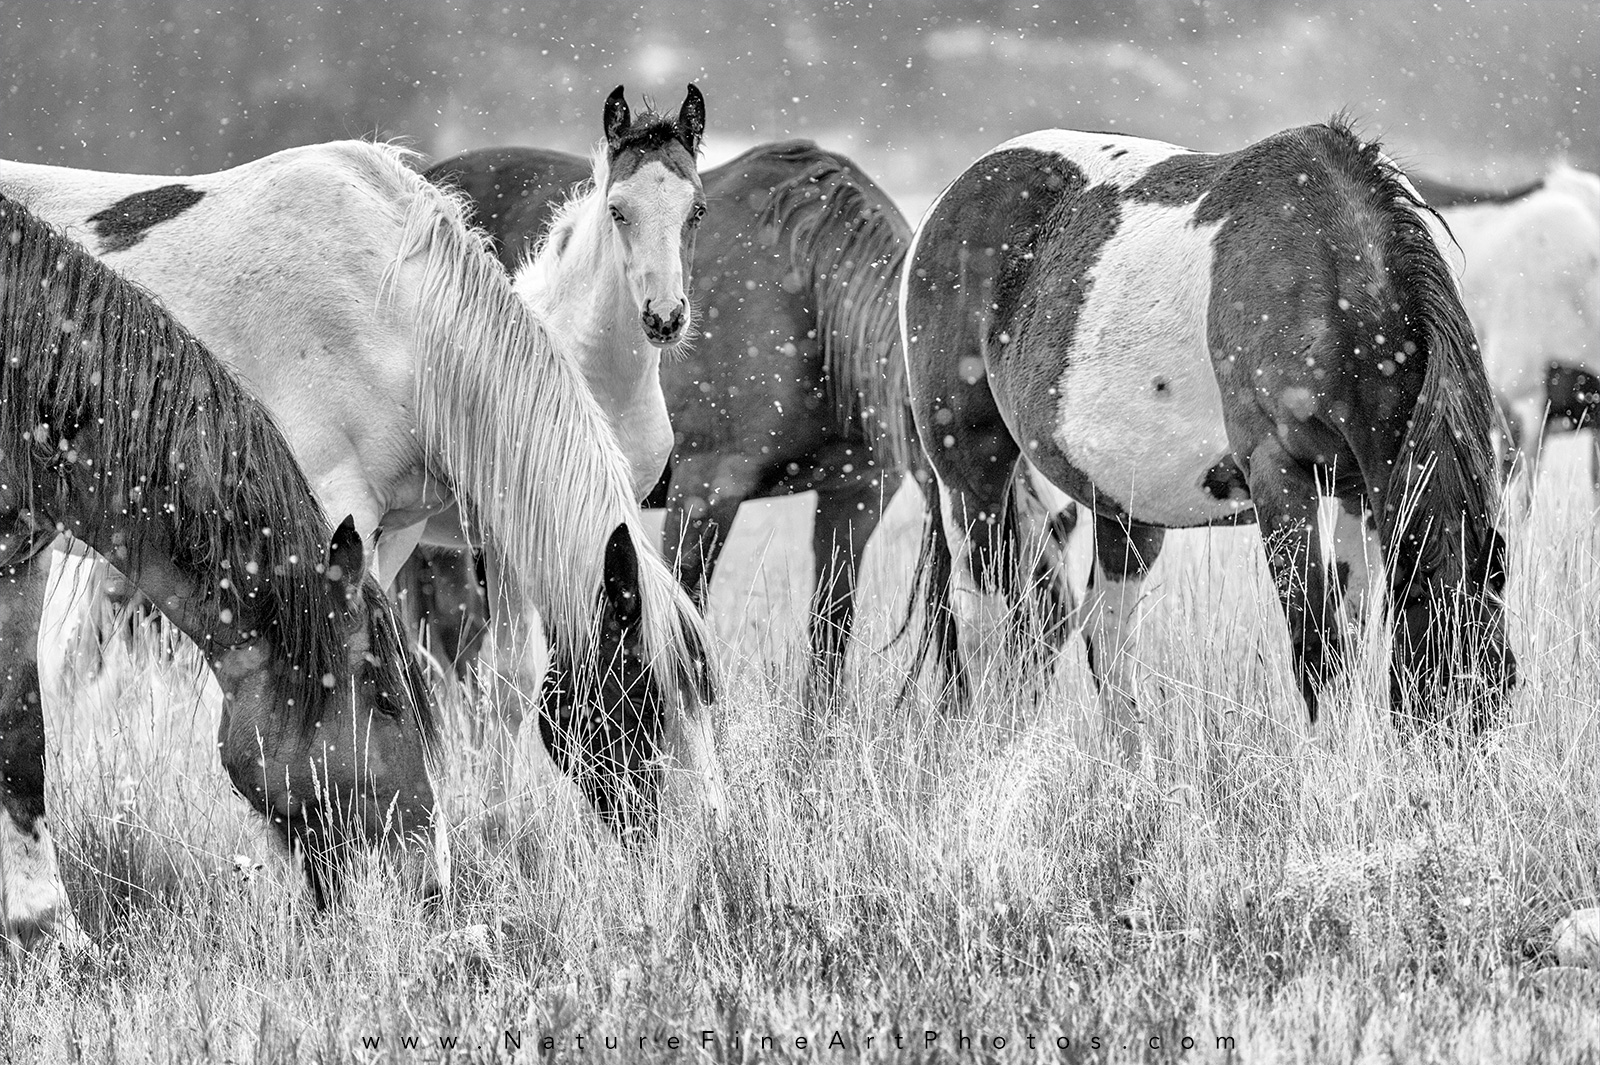 Wild Horse herd with alert baby horse Photo